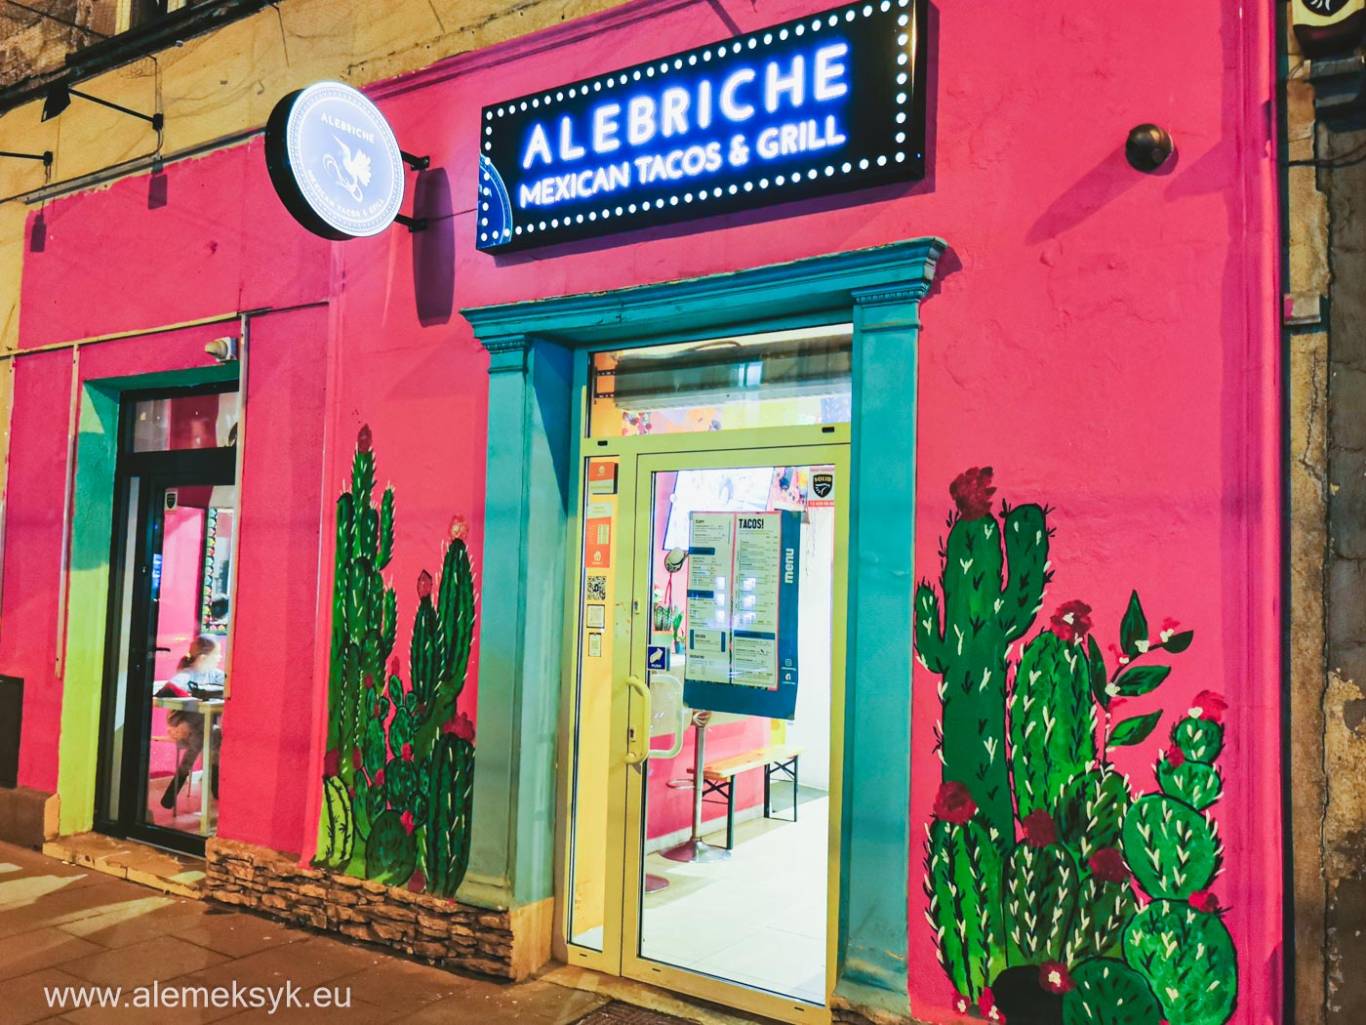 Restauracja Alebriche Mexican Tacos &amp; Grill w Krakowie - odrodzenie meksykańskich smaków w mieście Kraka